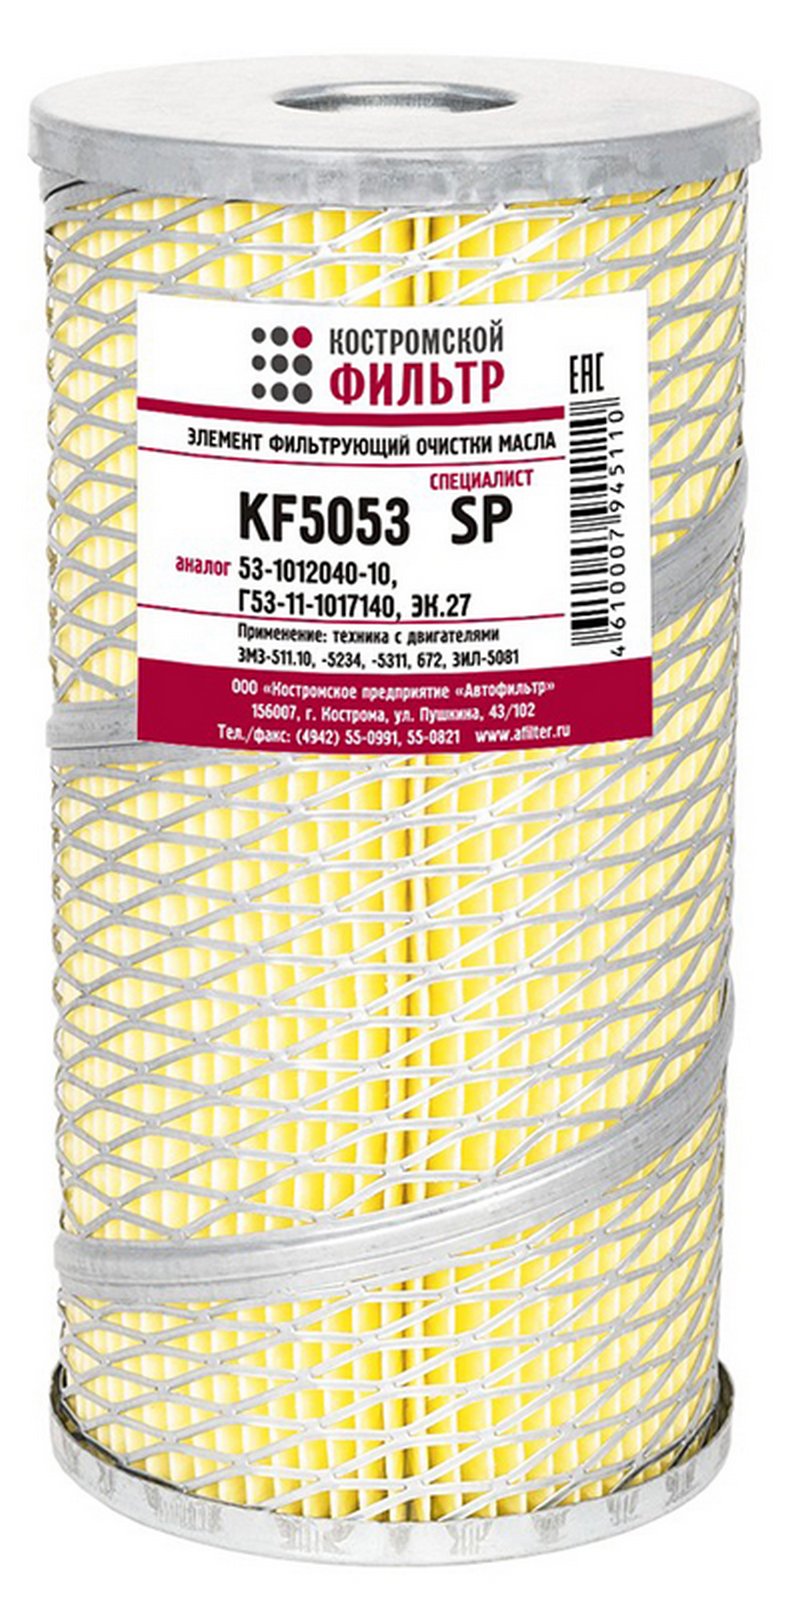 KF5053 SP Элемент фильтрующий очистки масла KF5053 SP (3307-1017140, 53-1012040-10, Г53-11-1017140, ЭК.27) Костромской фильтр